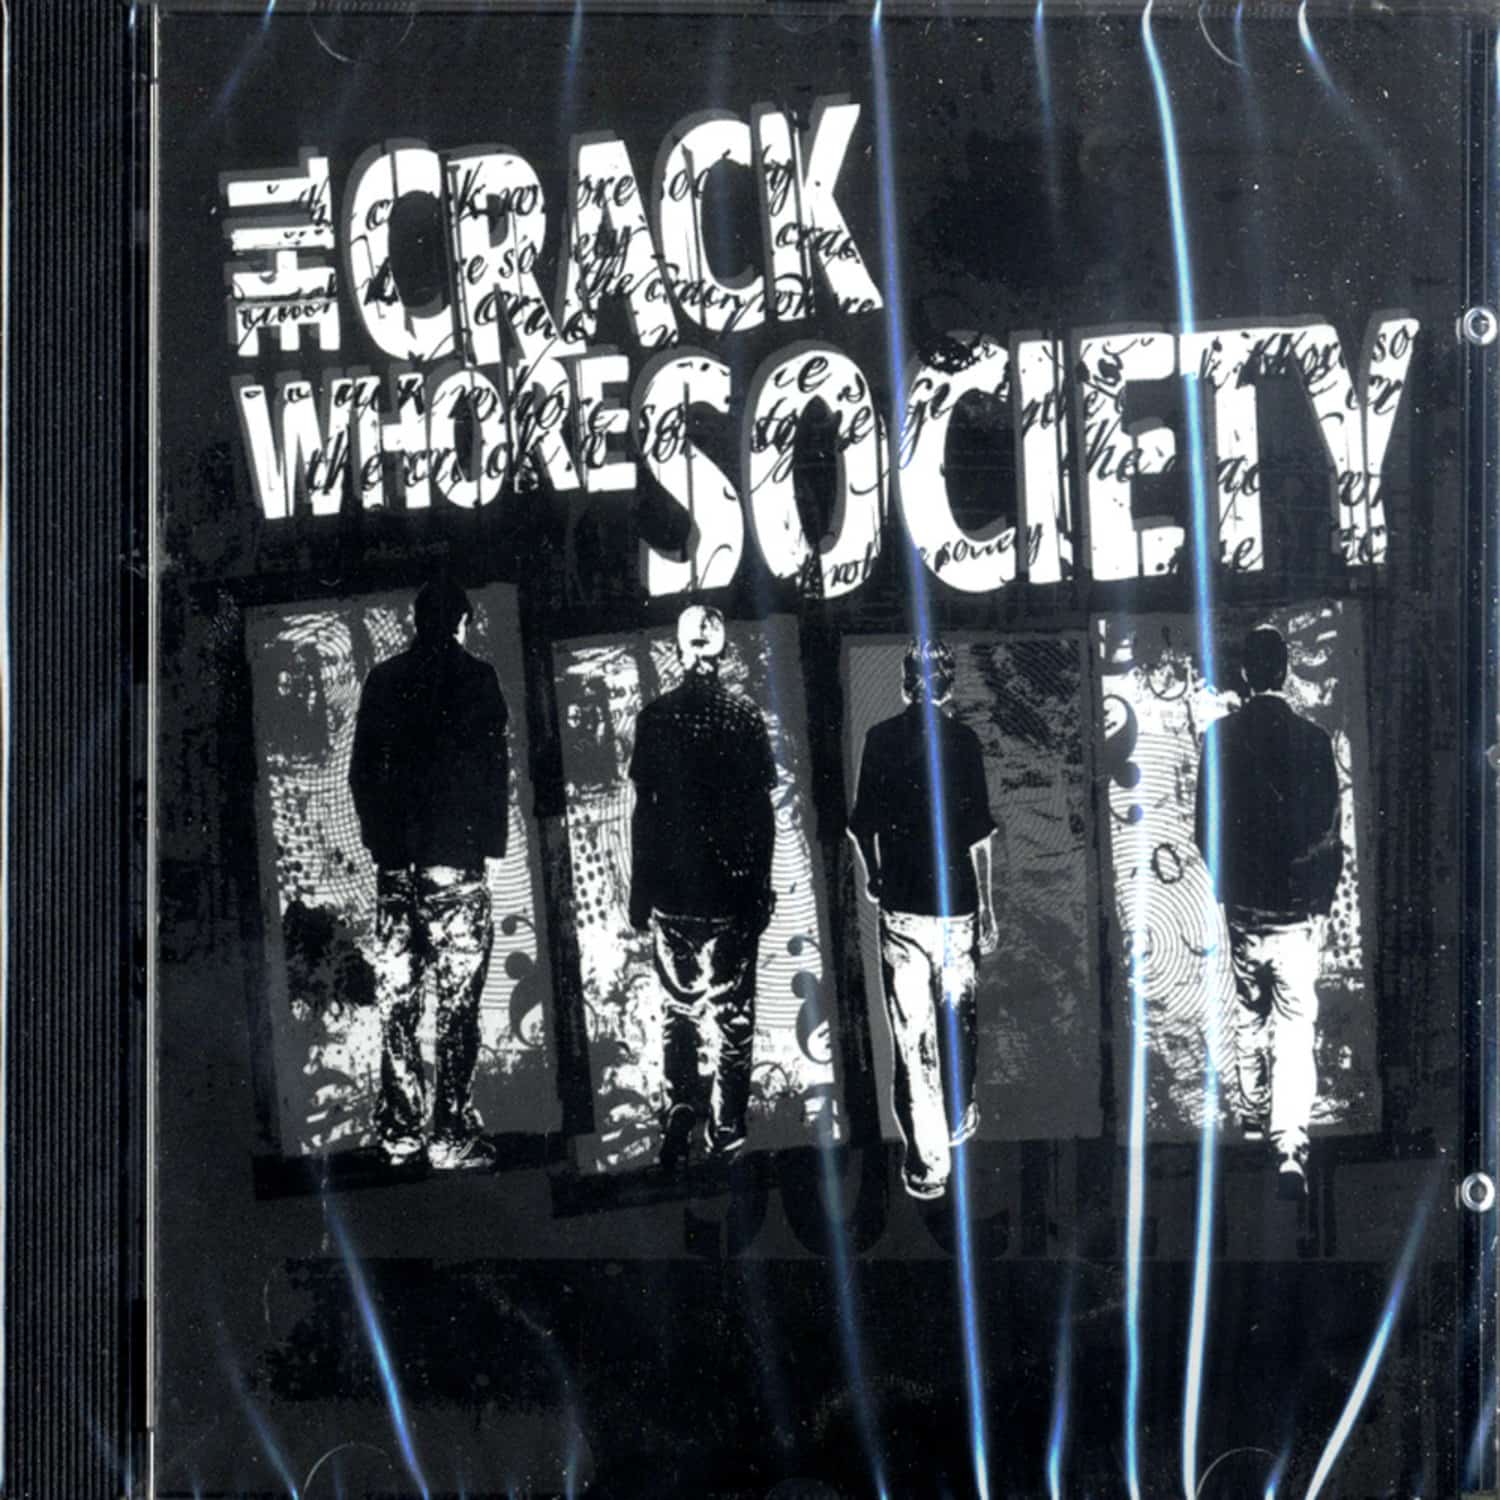 The Crack Whore Society - THE CRACK WHORE SOCIETY 